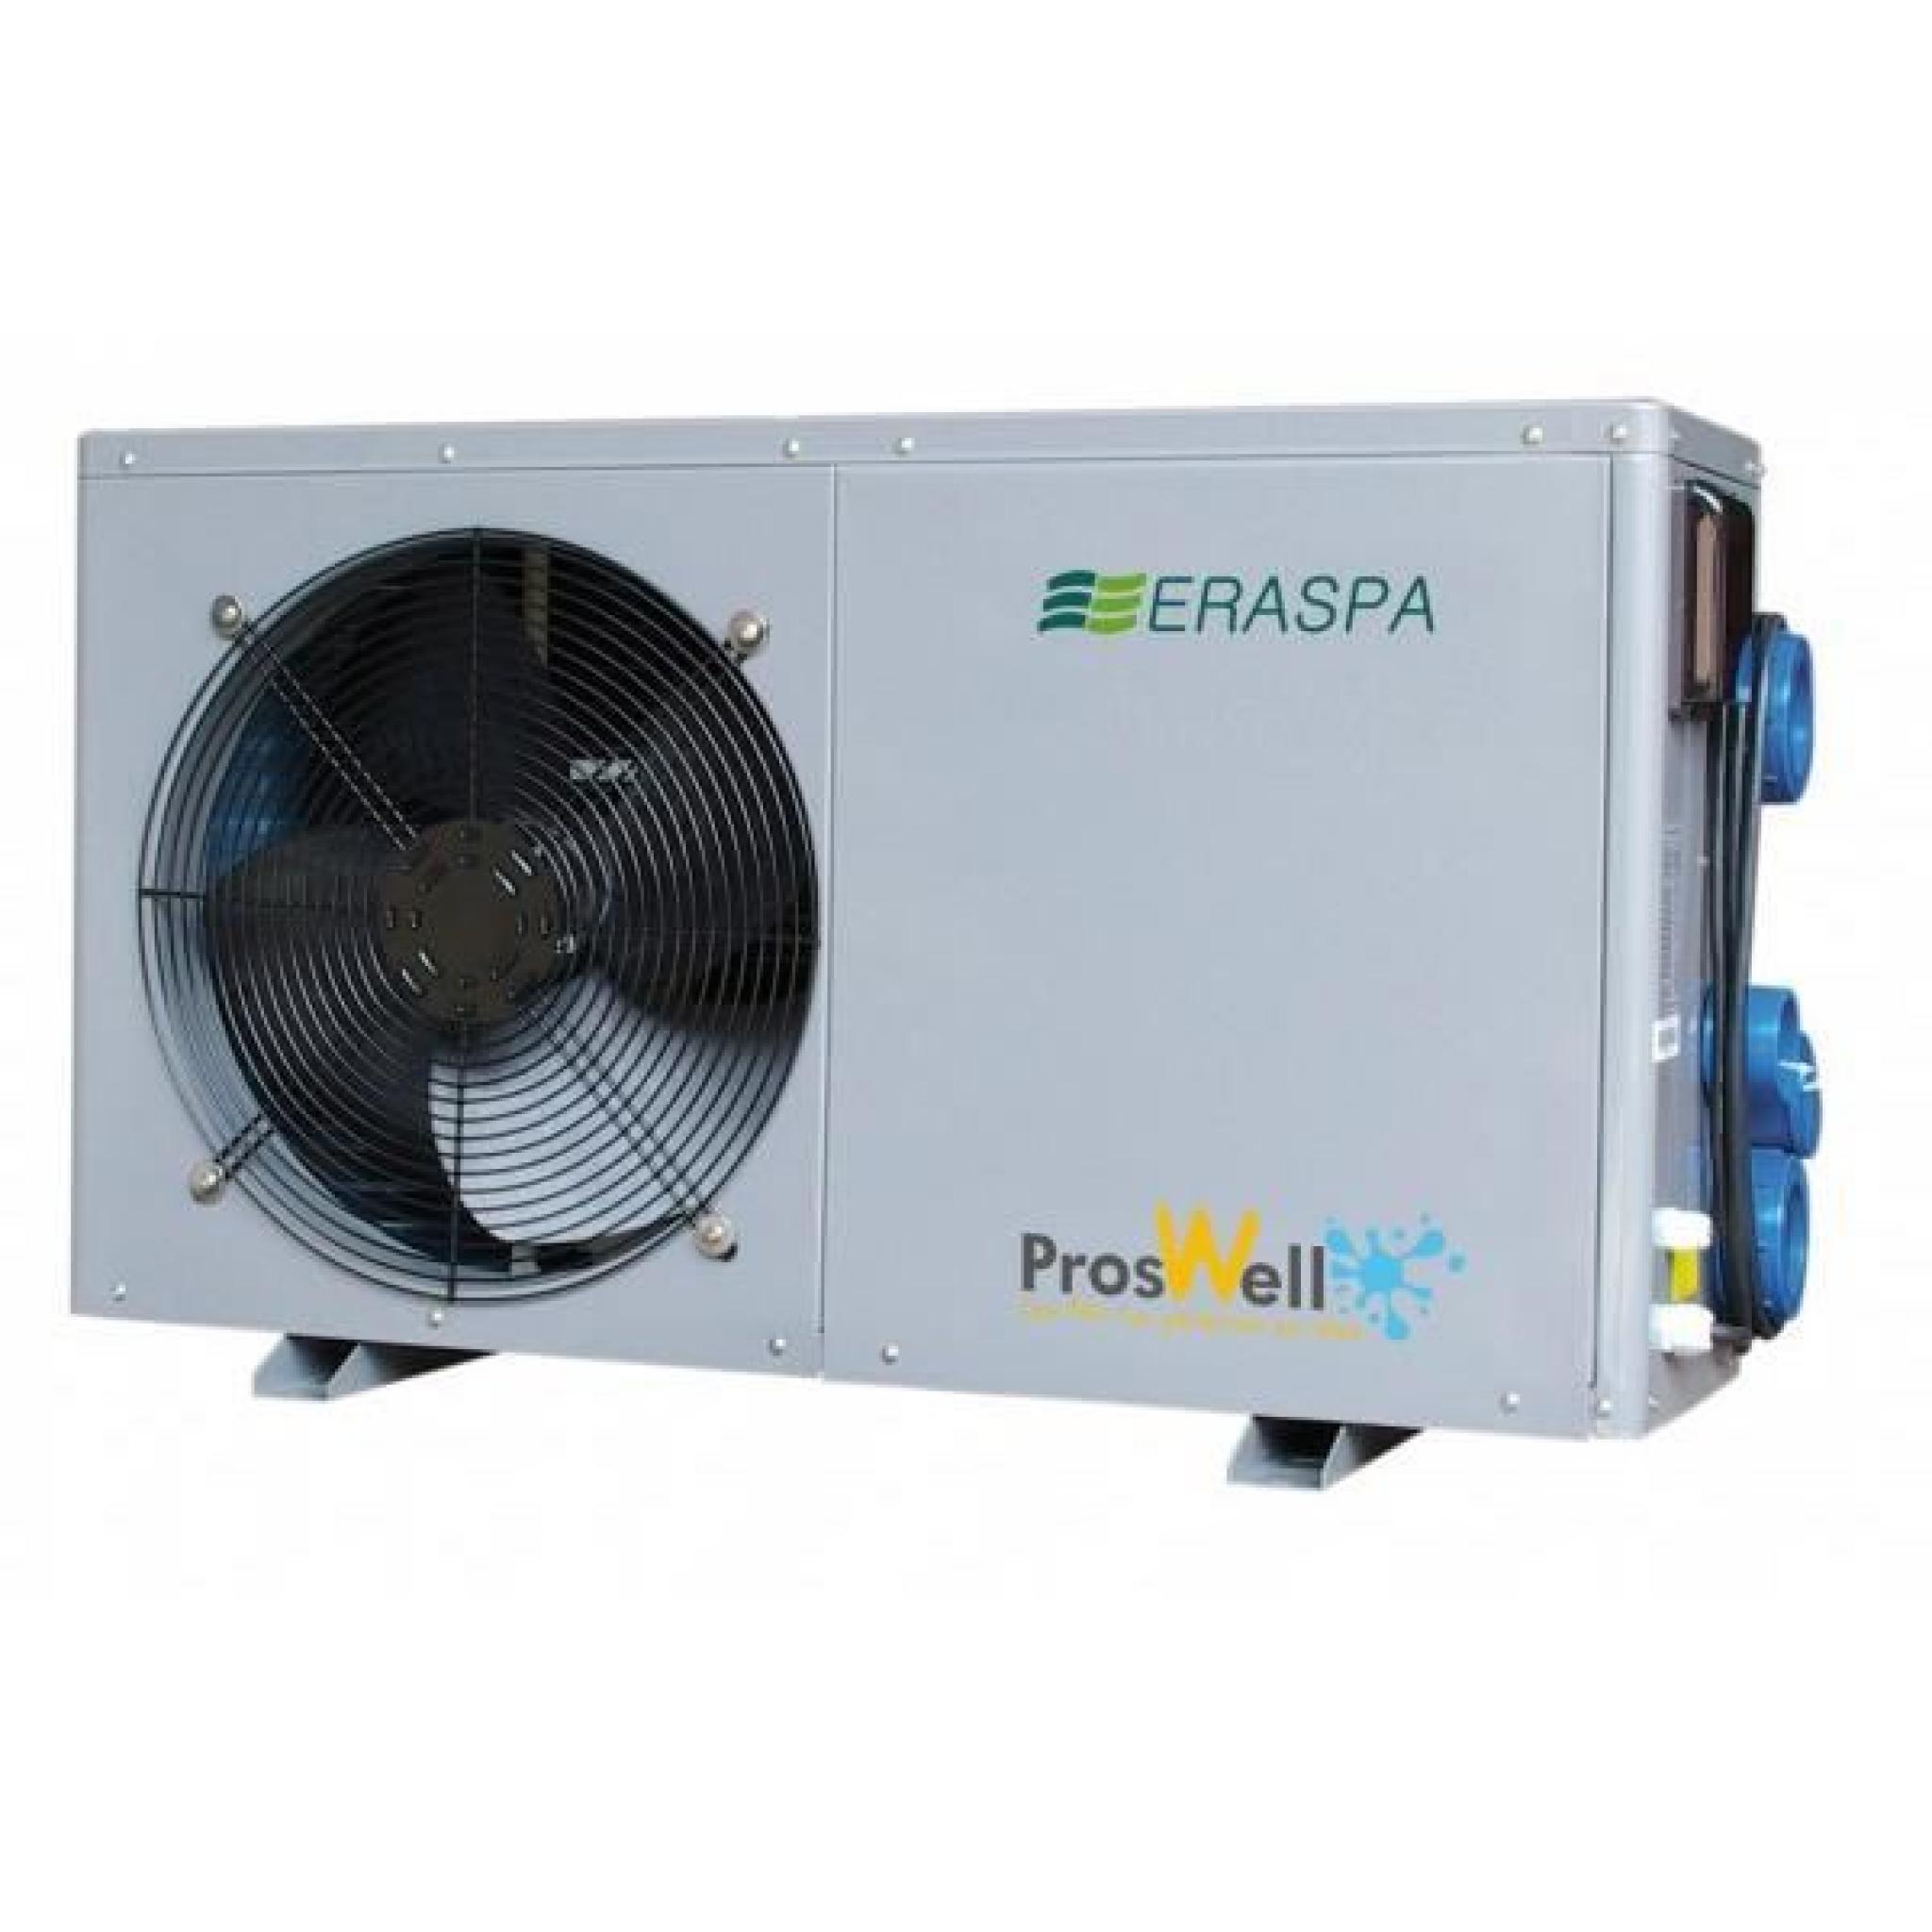 Pompe à chaleur Proswell Eraspa - 16 kW de 70 à 110 m3